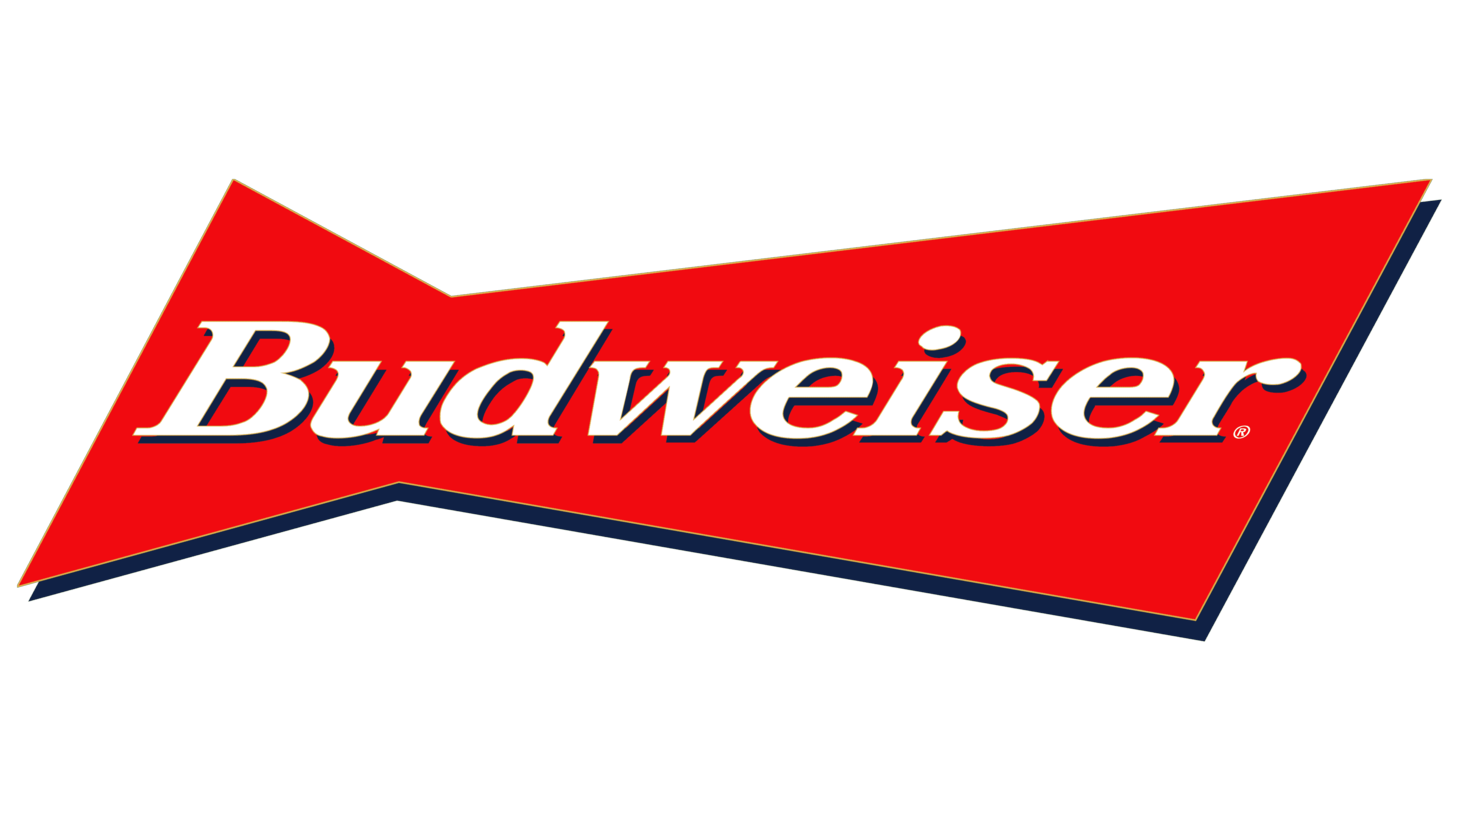 Budweiser sign 1987 1994